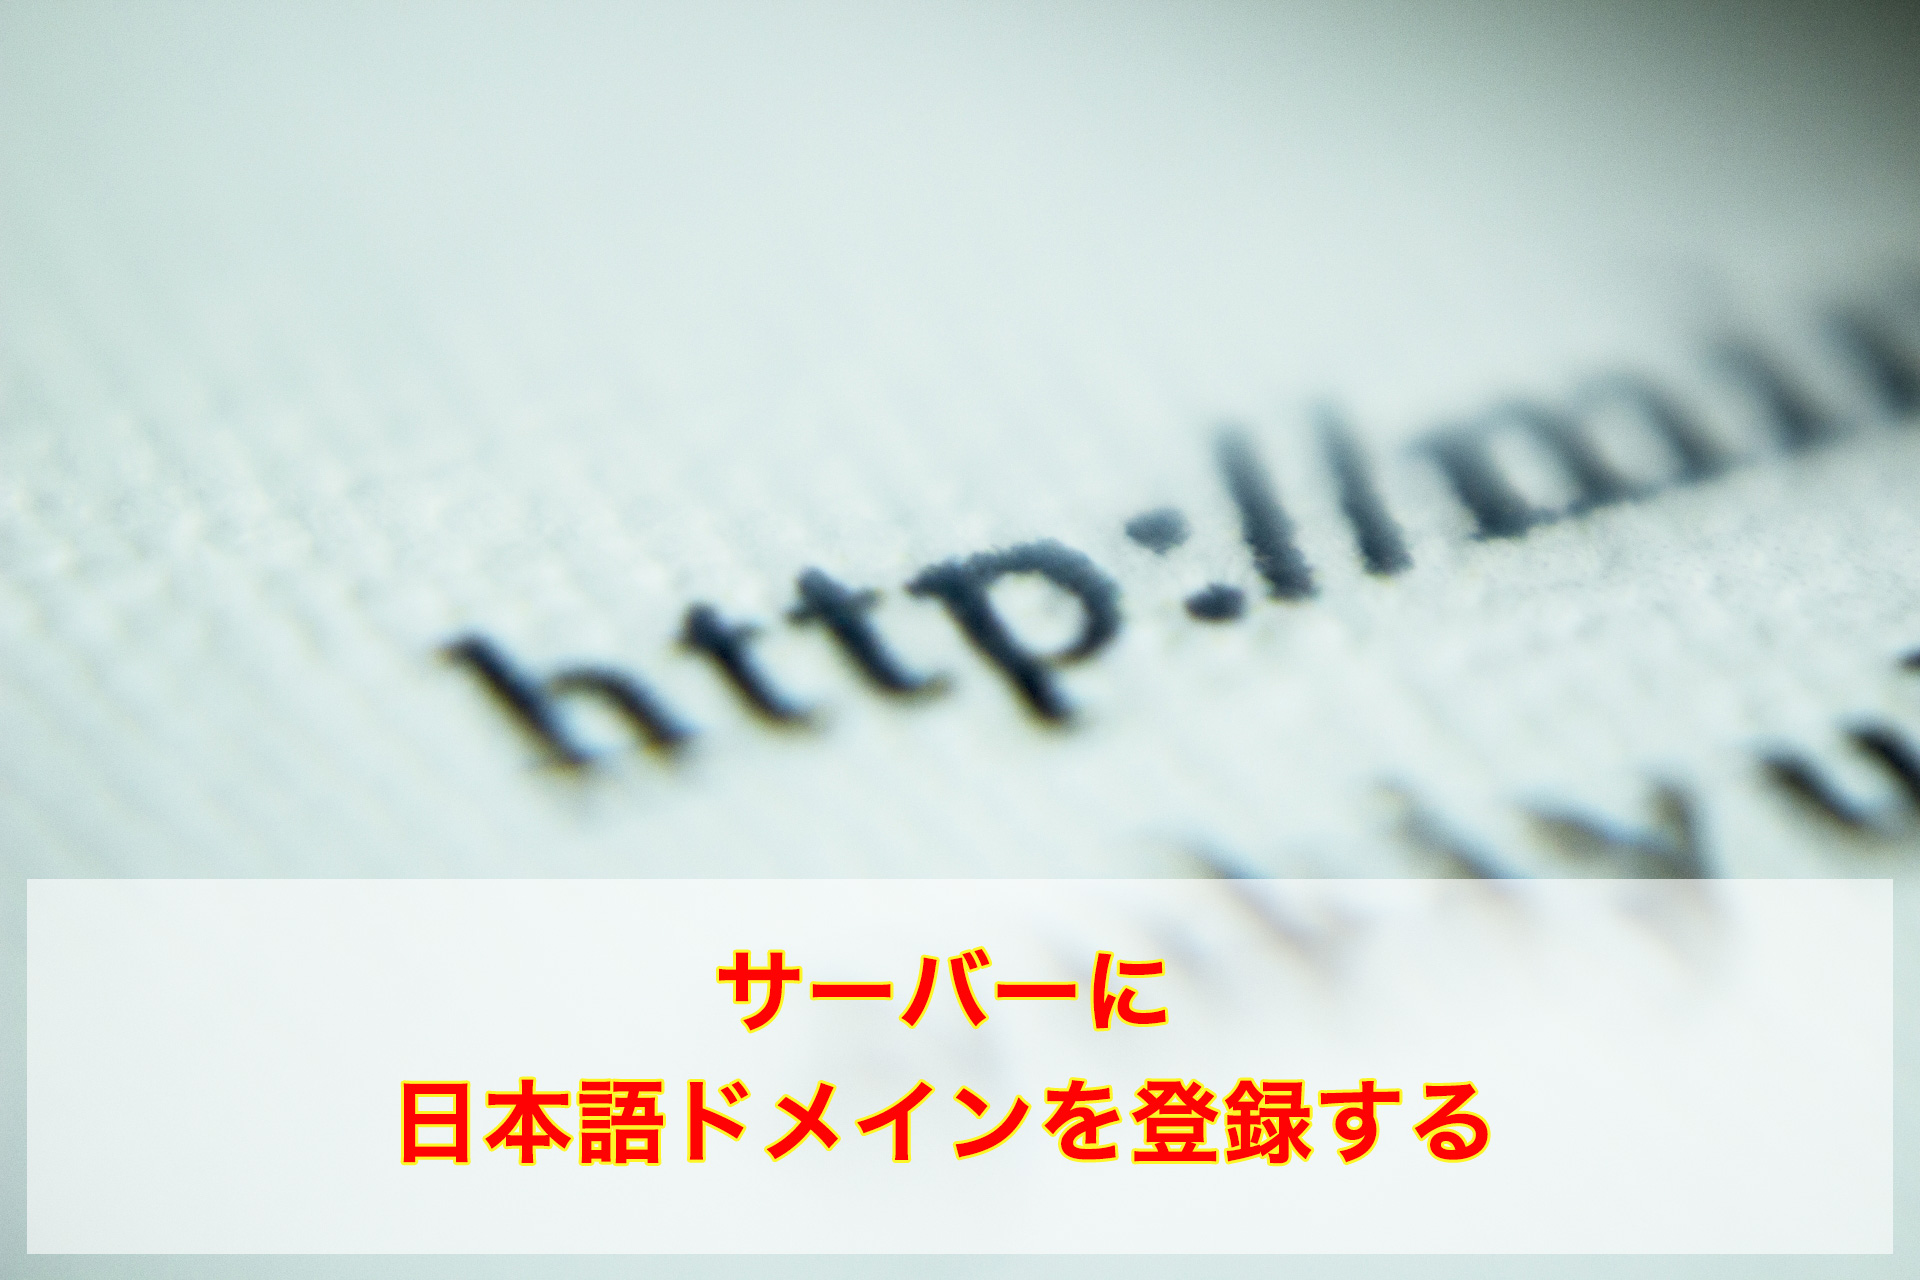 日本語ドメインをレンタルサーバーに登録する方法